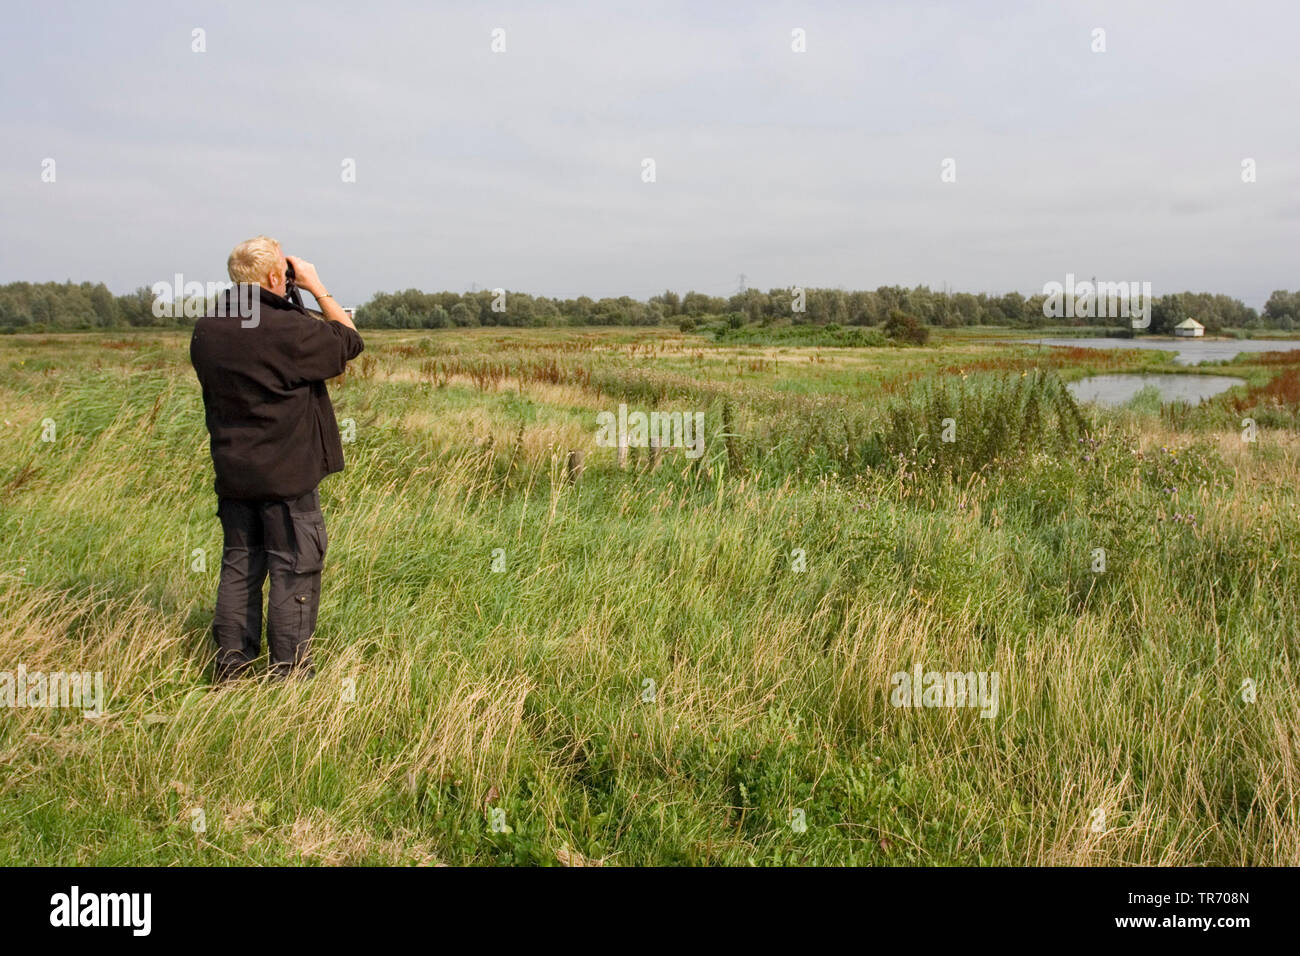 Birdwatcher in Flevopolder, Netherlands Stock Photo